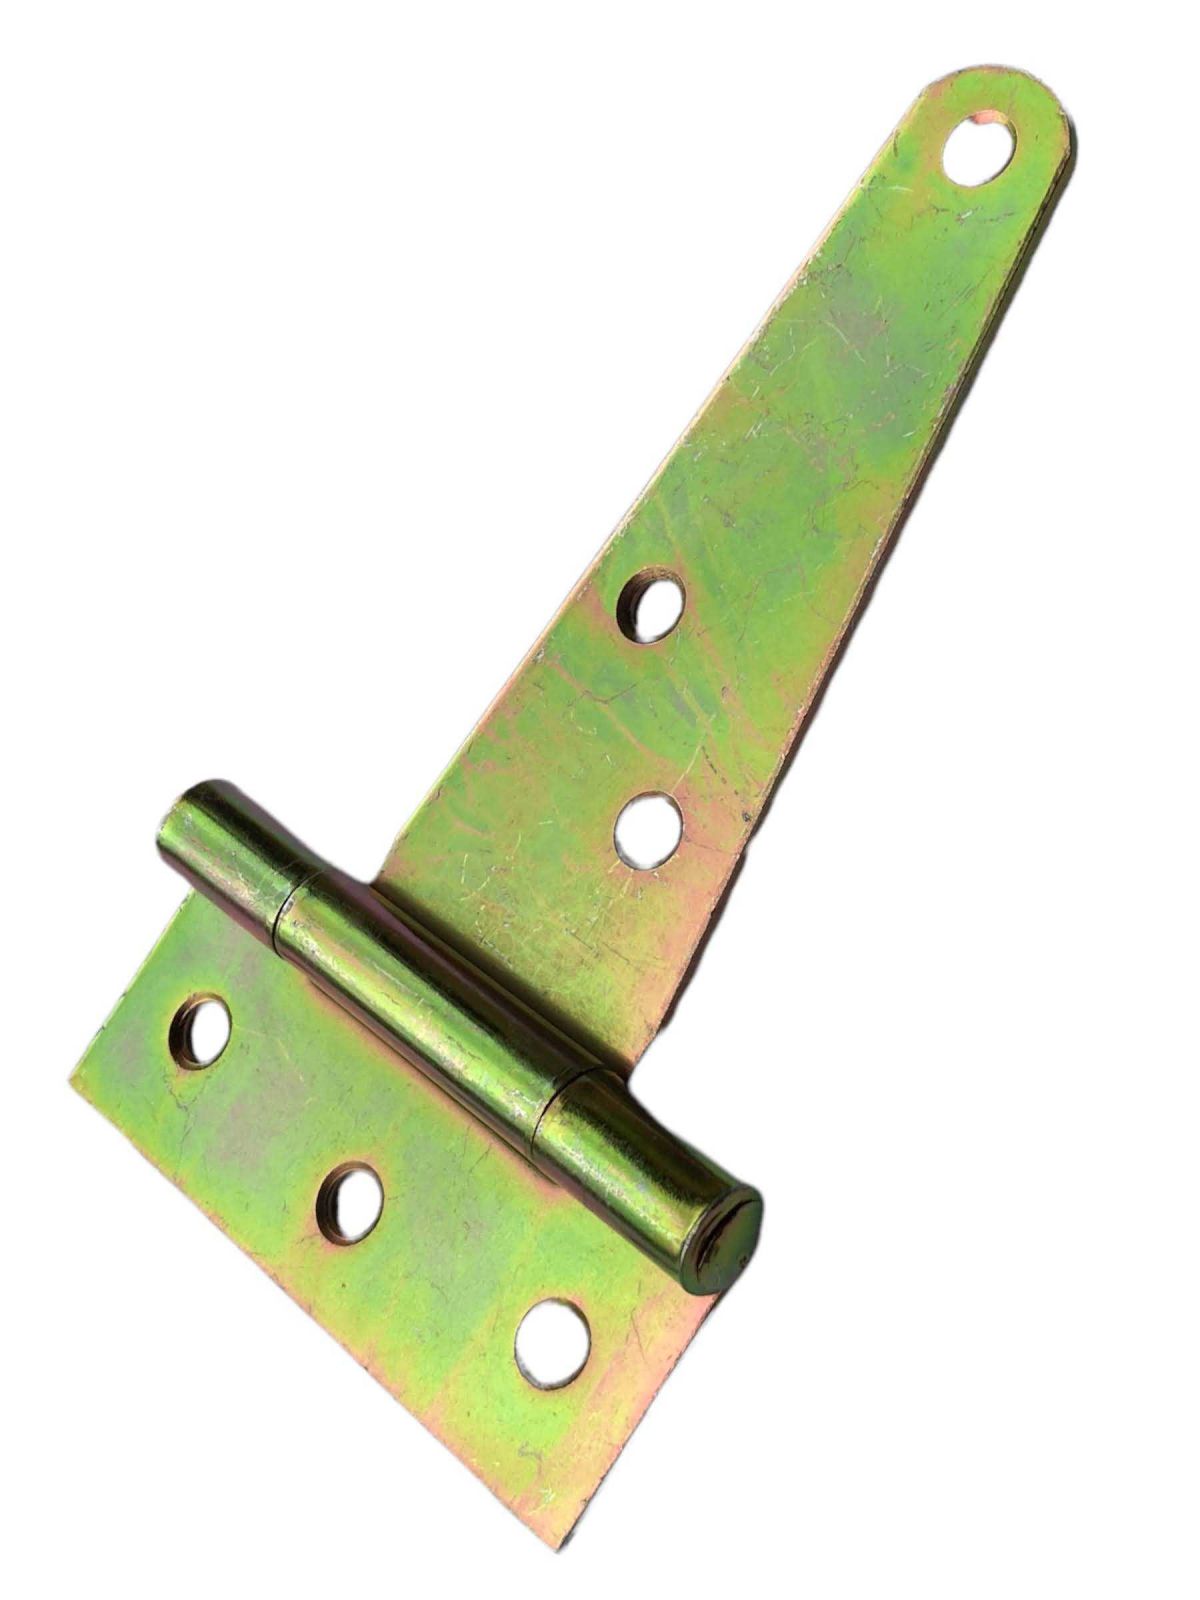 Závěs - pant ocelový na dřevěné vrata - typ T, 150x34x88mm, Zn. žlutý